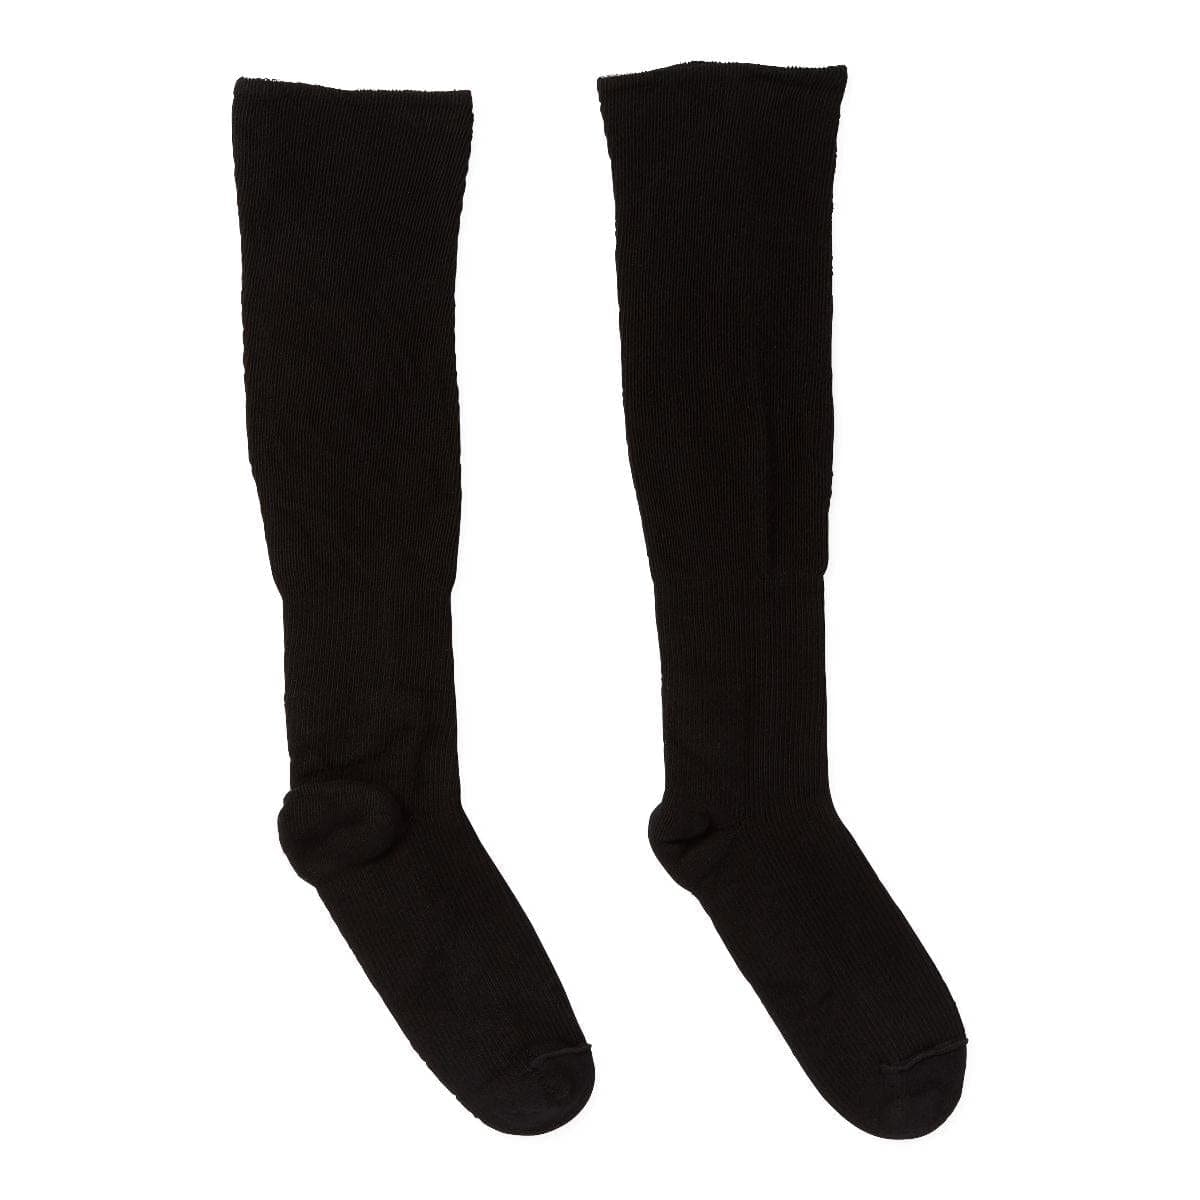 Medline MD Medline COMPRECARES Liner Socks